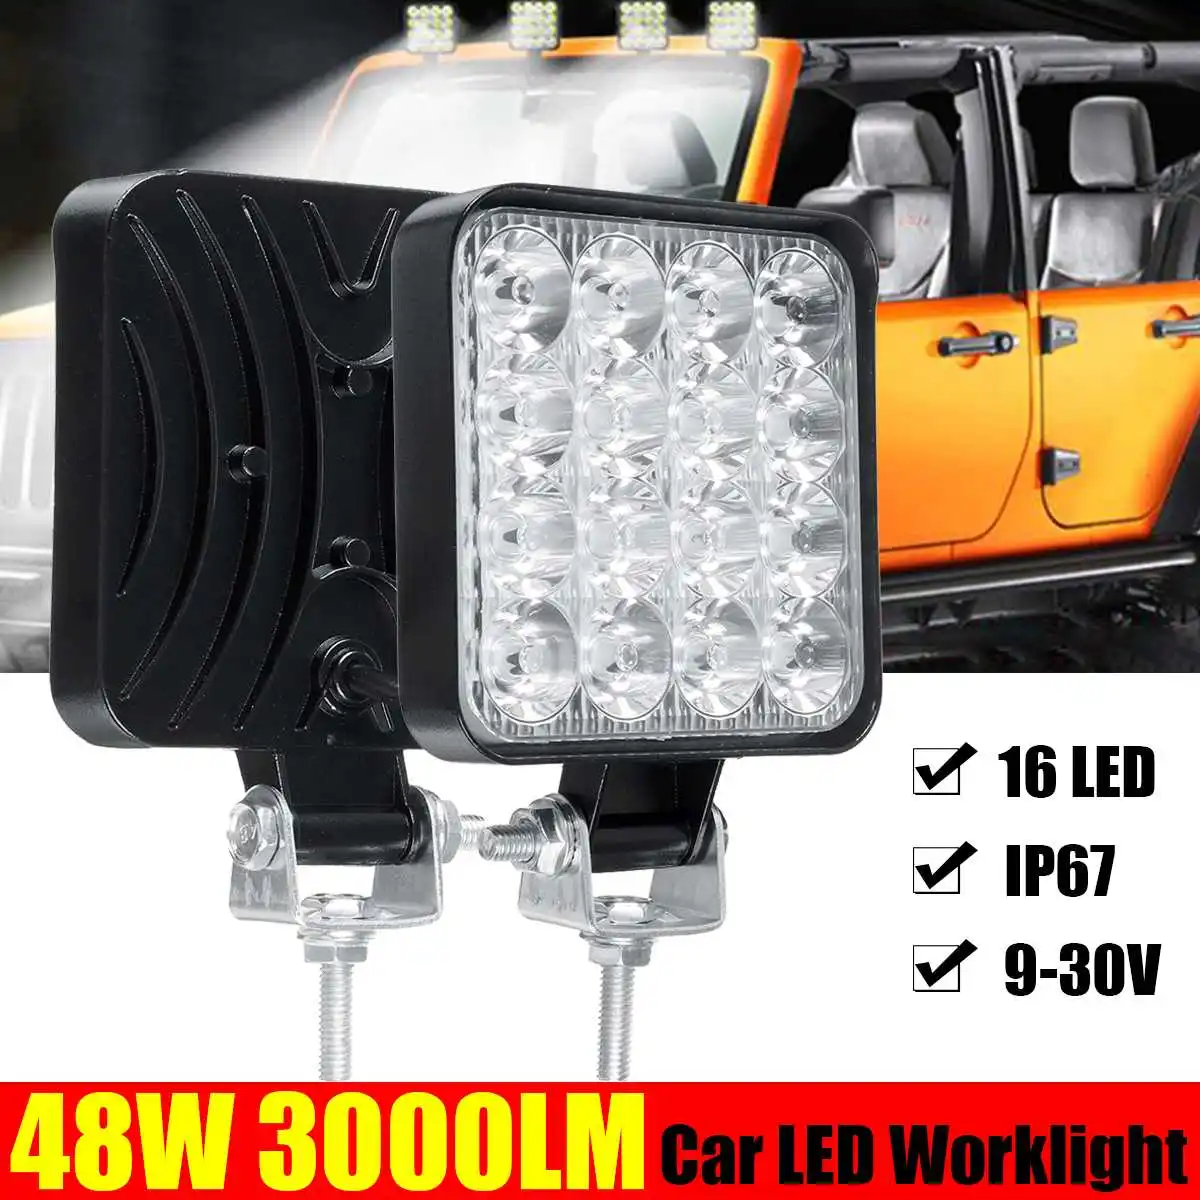 Led light bar 48w Led bar 16barra 4X4 Square Spotlight working lamp led work light 9-30V car light For Car Trucks Koparka